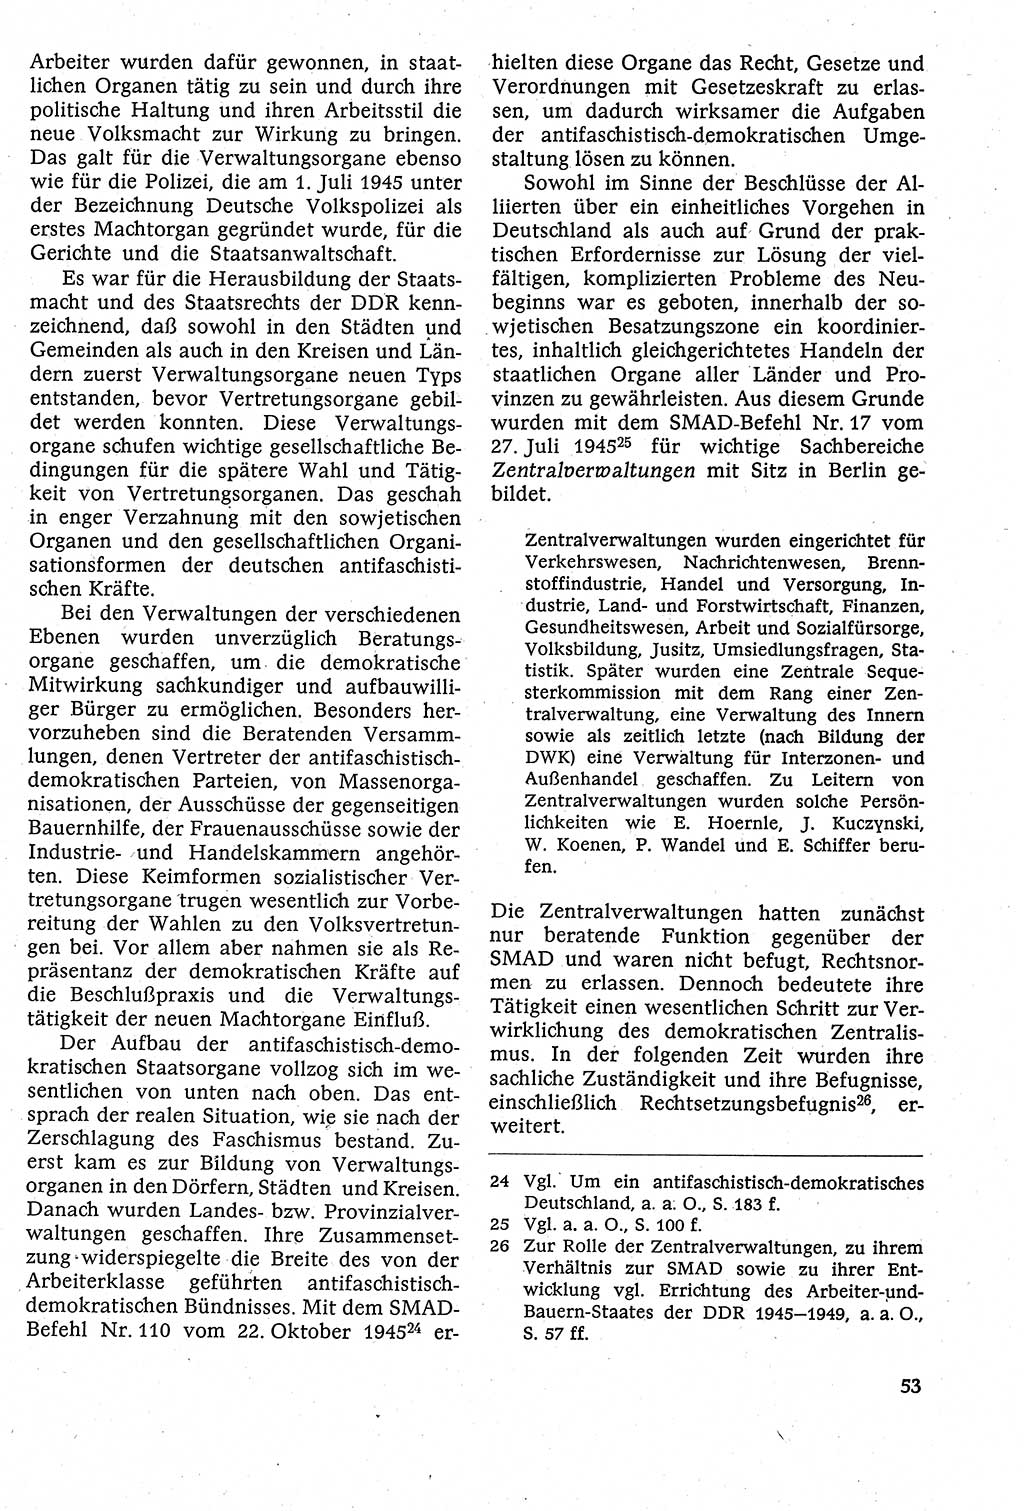 Staatsrecht der DDR [Deutsche Demokratische Republik (DDR)], Lehrbuch 1984, Seite 53 (St.-R. DDR Lb. 1984, S. 53)